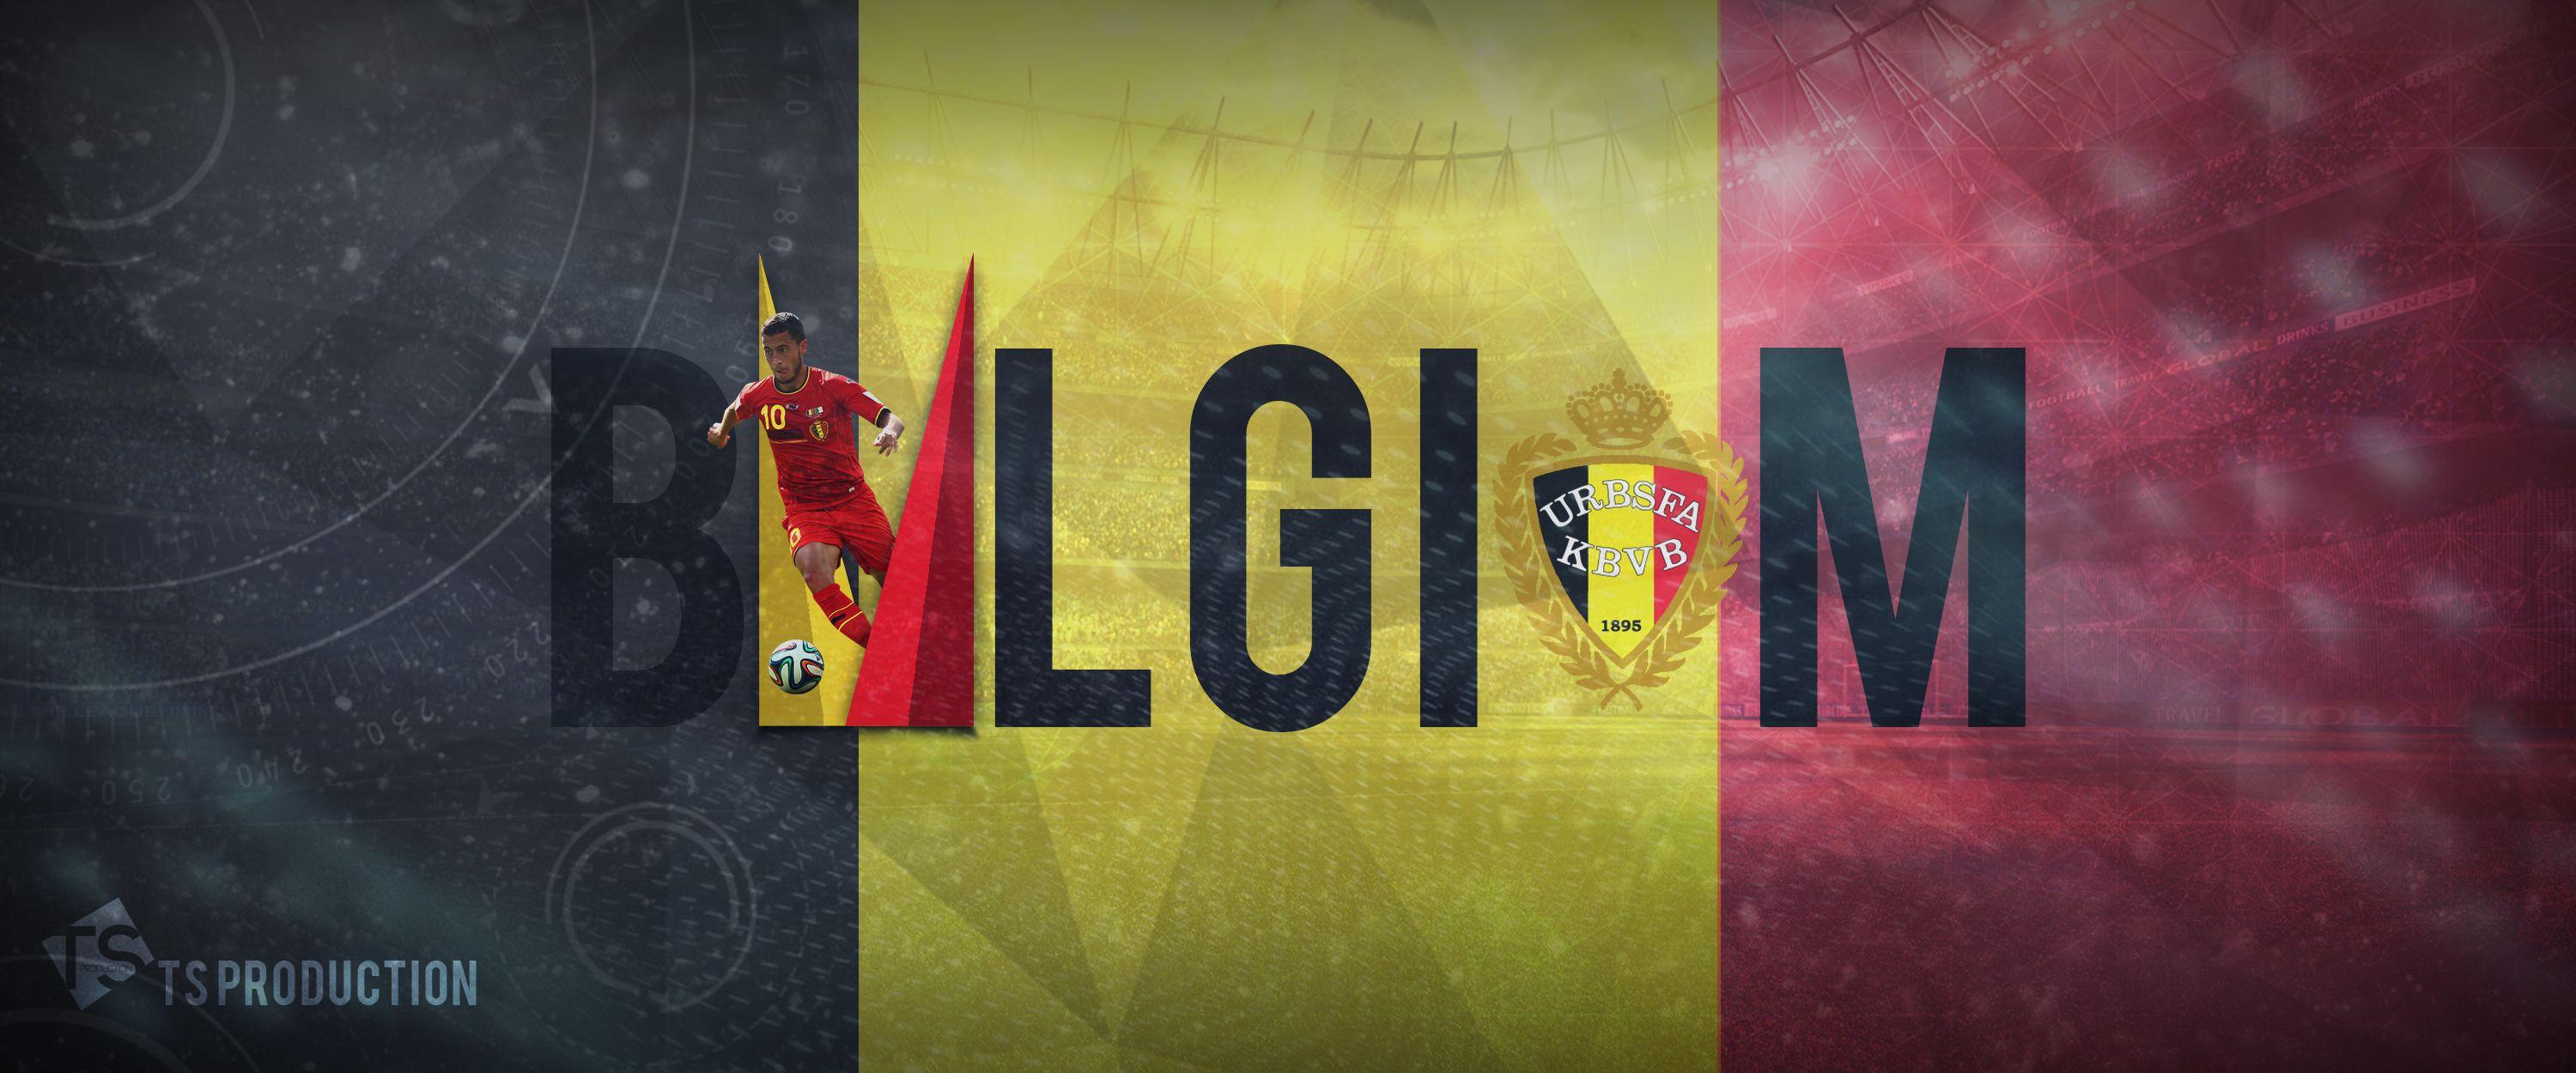 Belgium National Football Team Google Meet Background